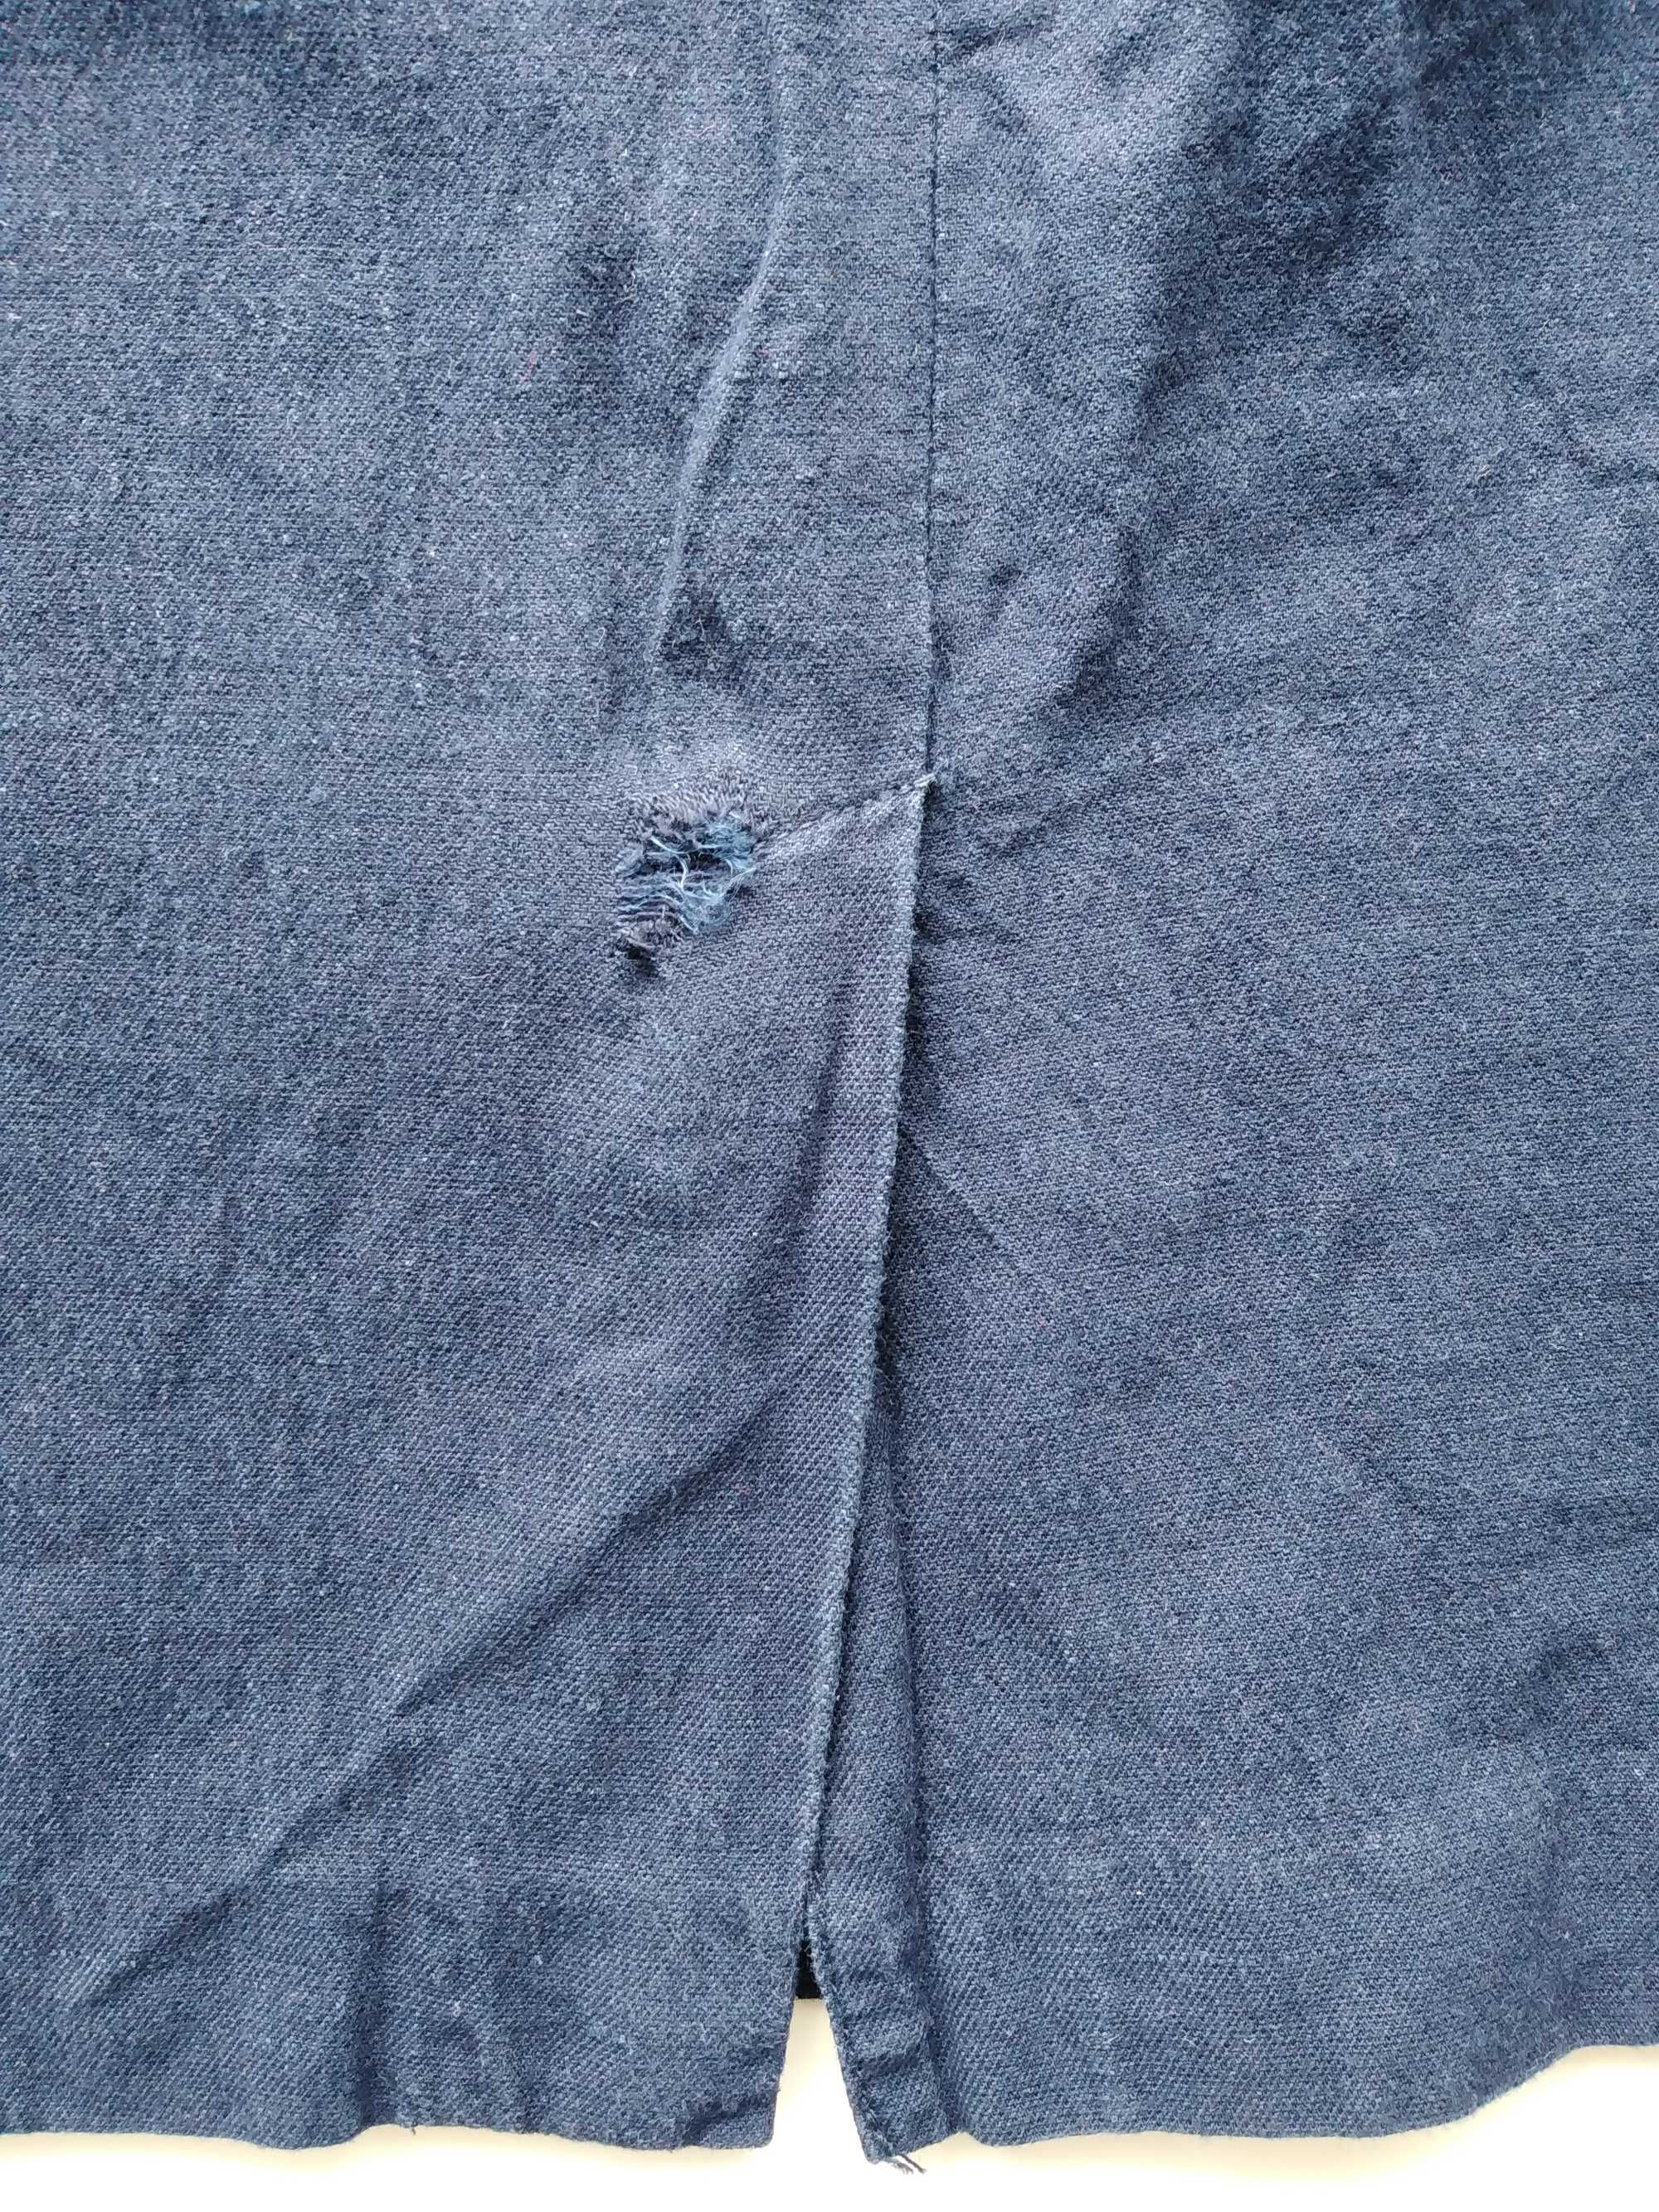 Granatowa spódnica ołówkowa z kieszeniami, Orsay, 36